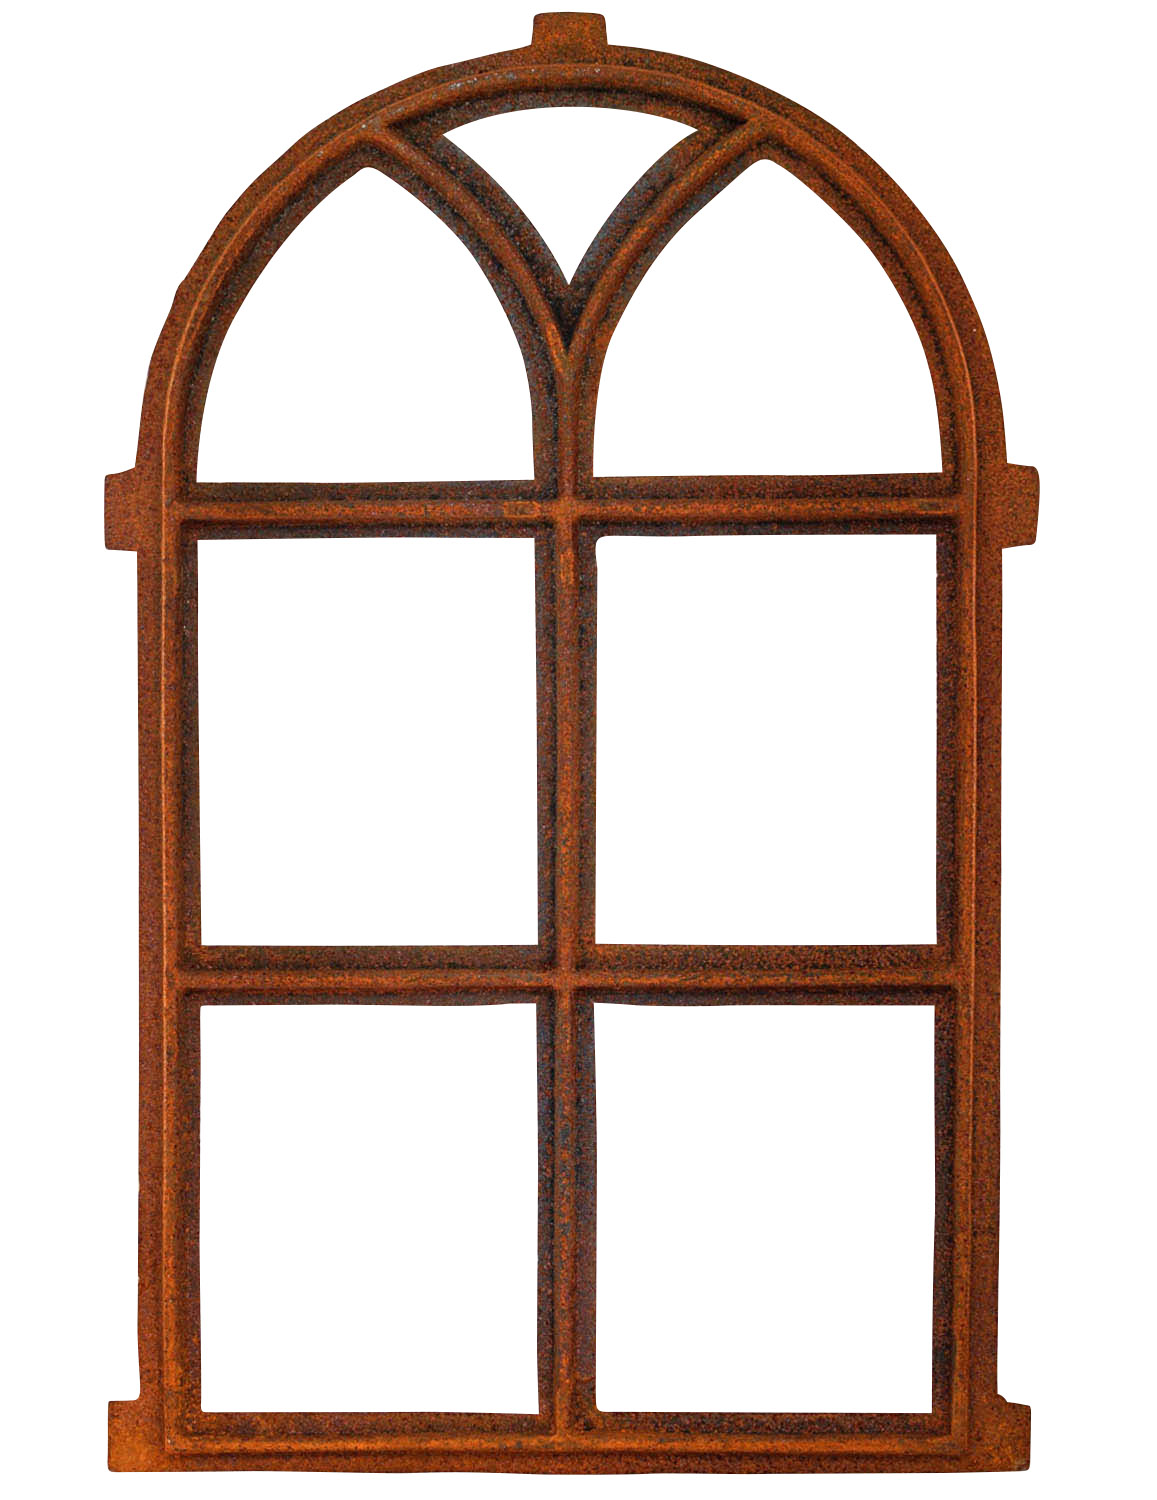 Stallfenster halbrund Gusseisen Oberlicht Rost Fenster Eisenfenster Antik Stil 